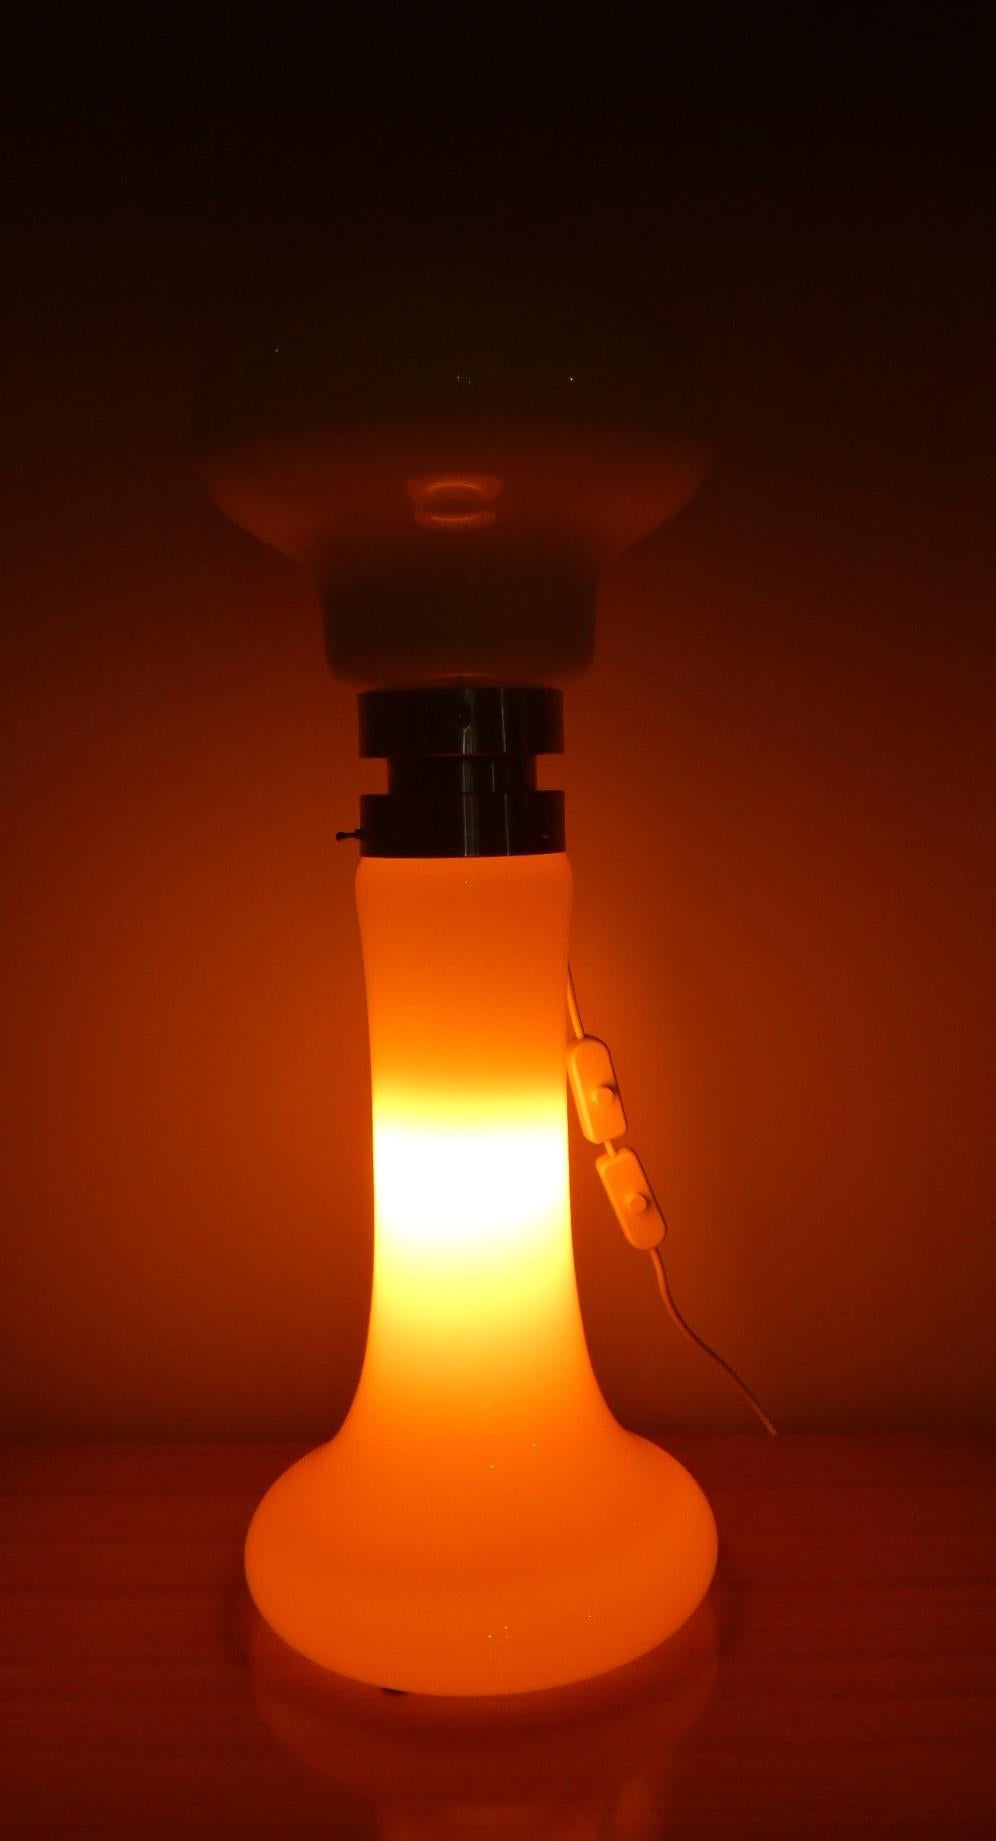 Intramontabile la lampada in vetro di Murano, disegnata da Carlo Nason per Mazzega negli anni ’60.

I due grandi diffusori in vetro opalino sono collegati al centro con un giunto in lamiera di acciaio. Nason creò vari modelli di questa lampada, in